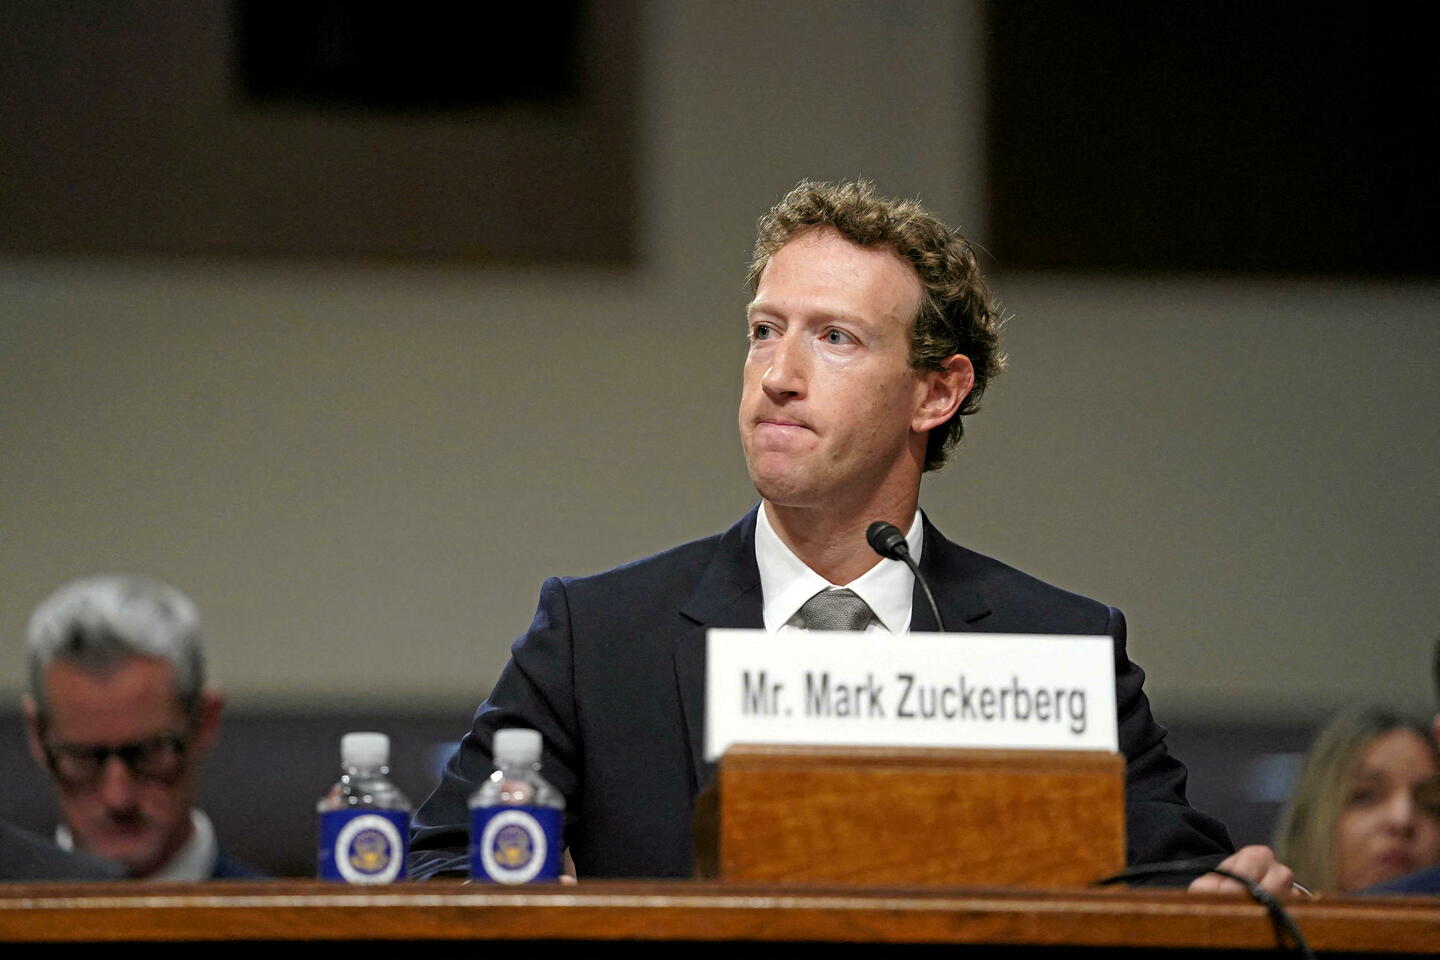 Danger des réseaux sociaux : le créateur de Facebook, Mark Zuckerberg, présente des excuses